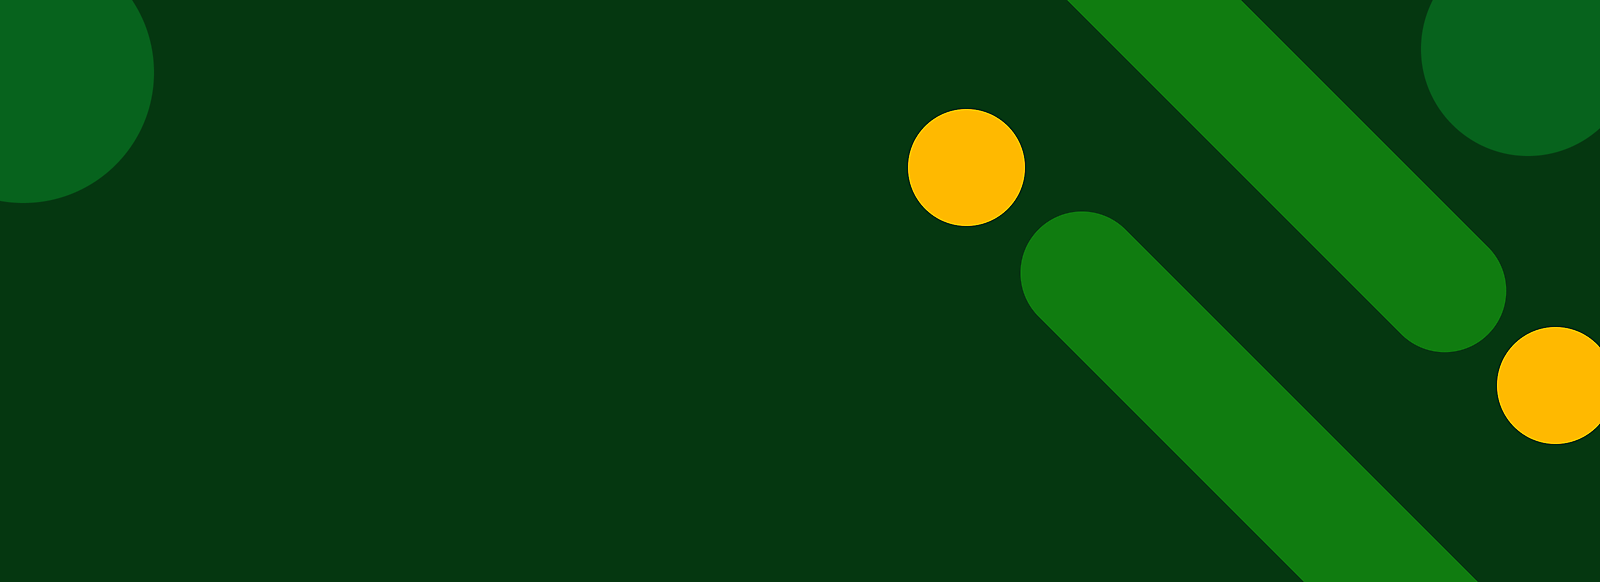 Fundo verde abstrato com pontos amarelos e riscas verdes diagonais.